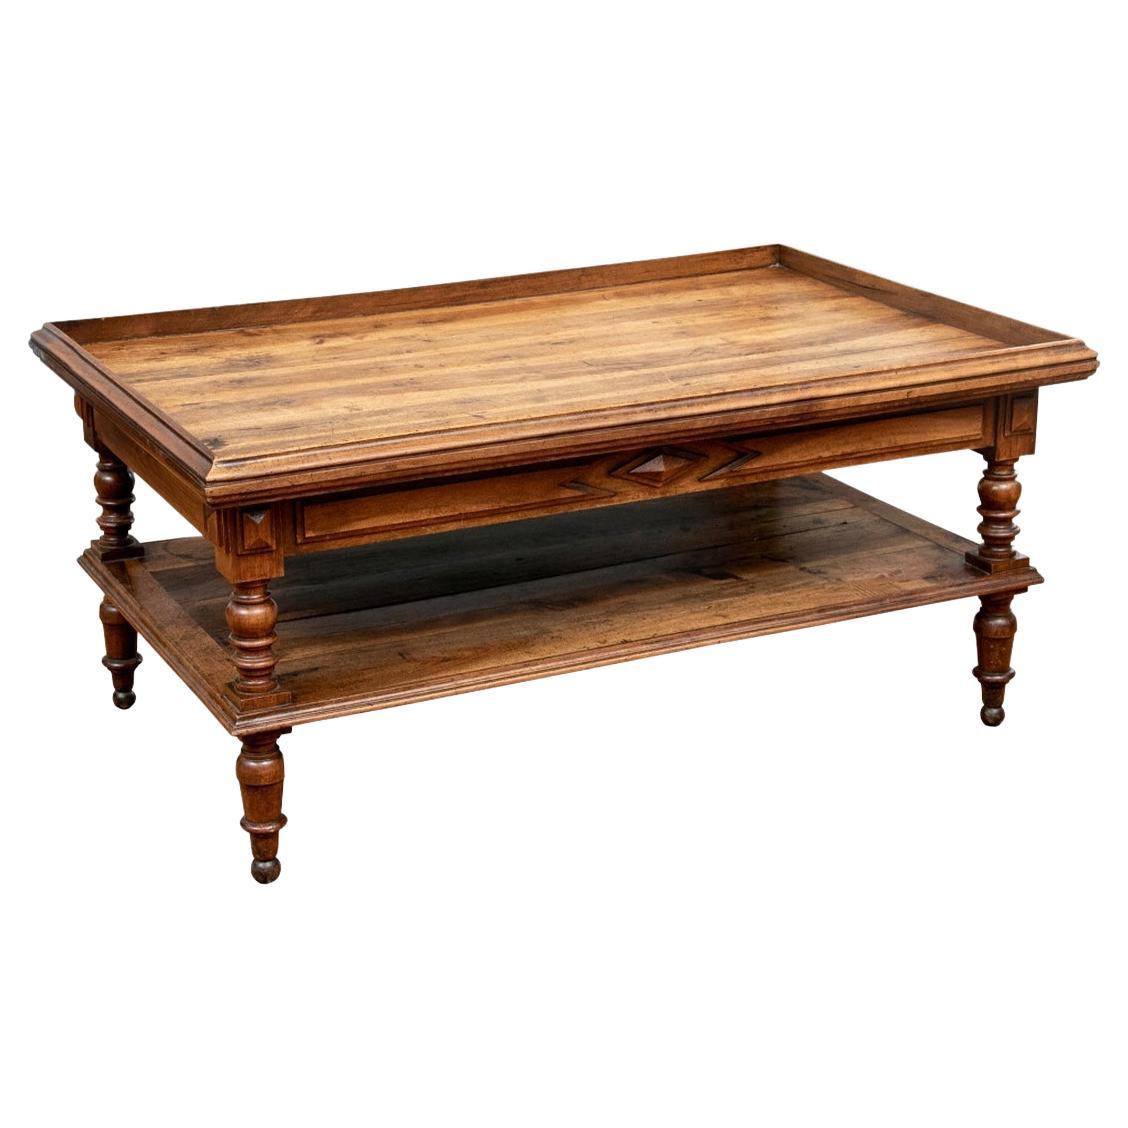 Table basse en bois à étages de style British Colonial